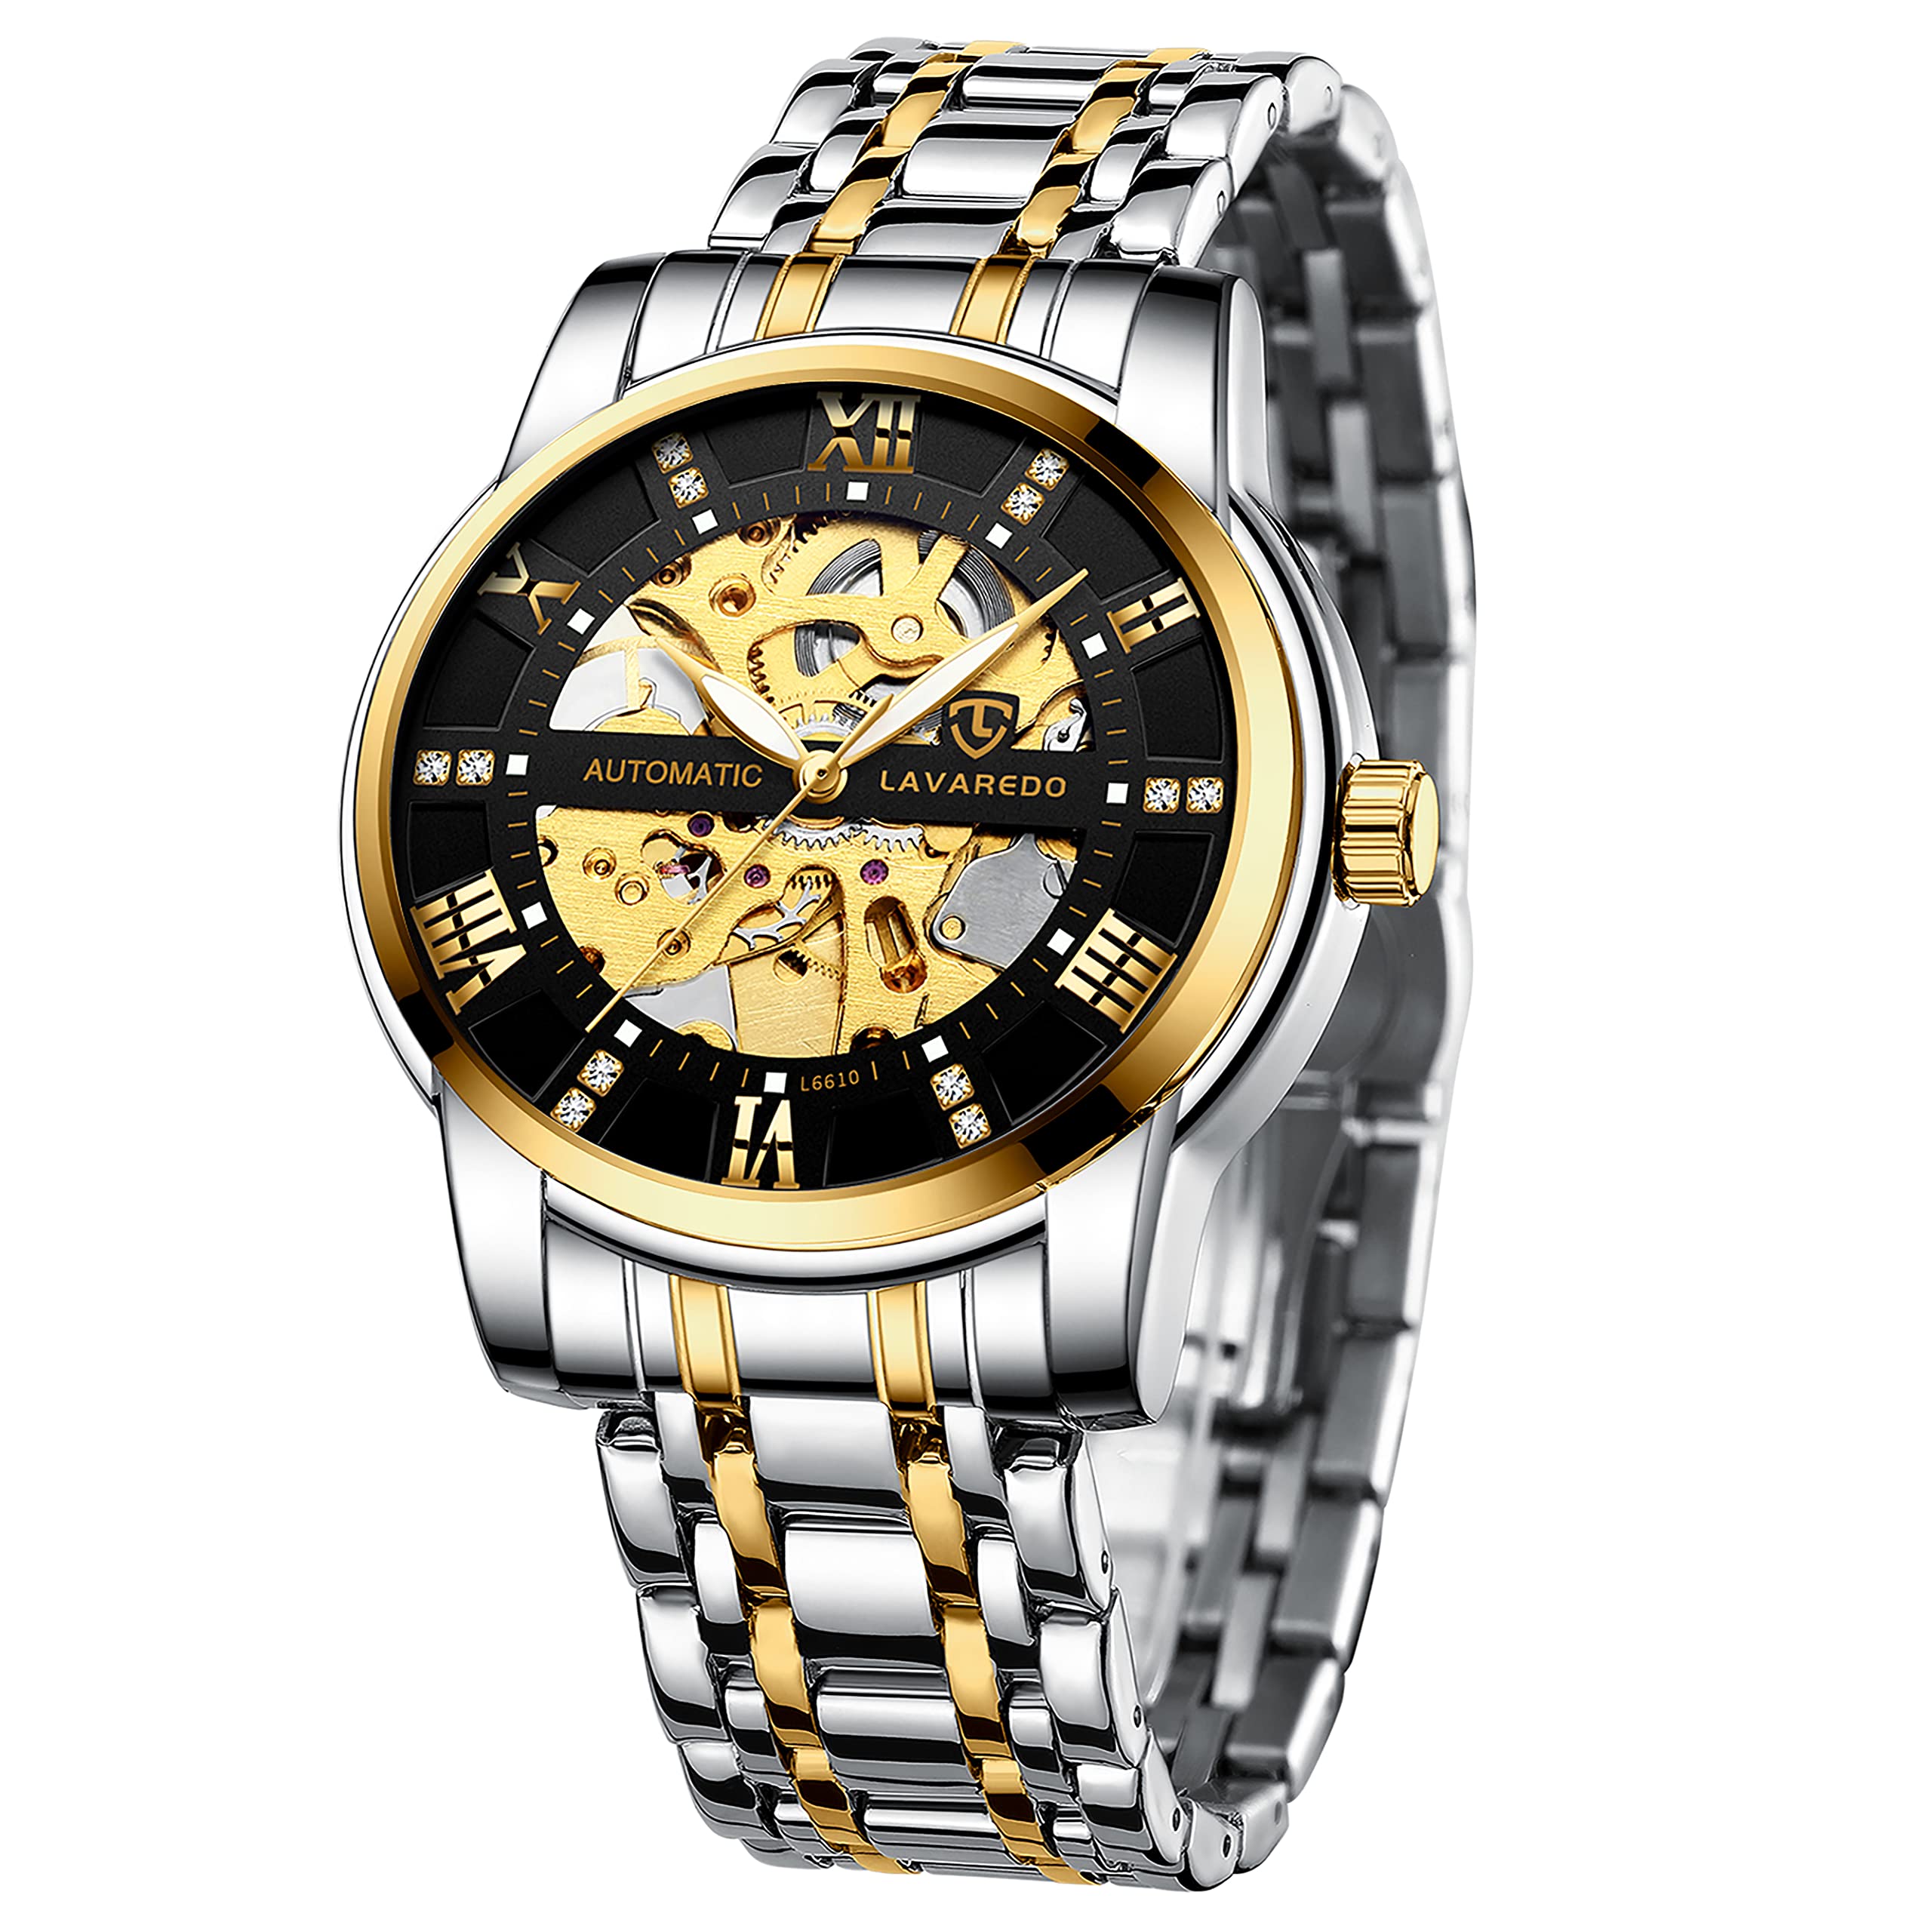 A ALPS Herren Uhren Automatikuhr Mechanische Skelett Glasboden Römische Zahlen Diamant Zifferblatt Wasserdicht Schwarz Männer Armbanduhr mit Edelstahl Armband